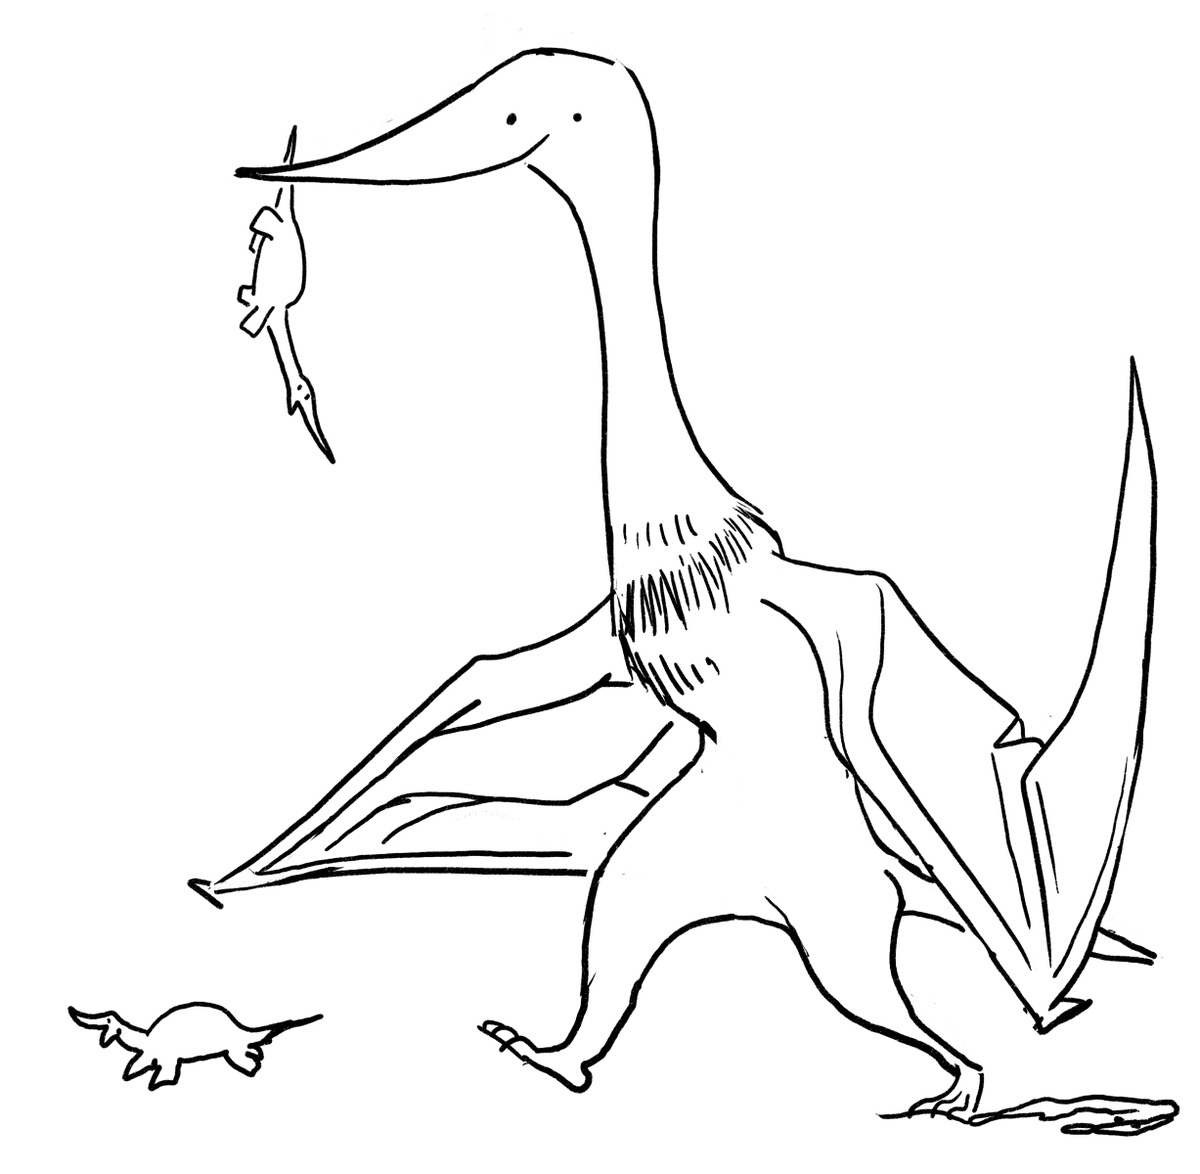 If @berdyaboi was of a genus of azhdarchid pterosaur